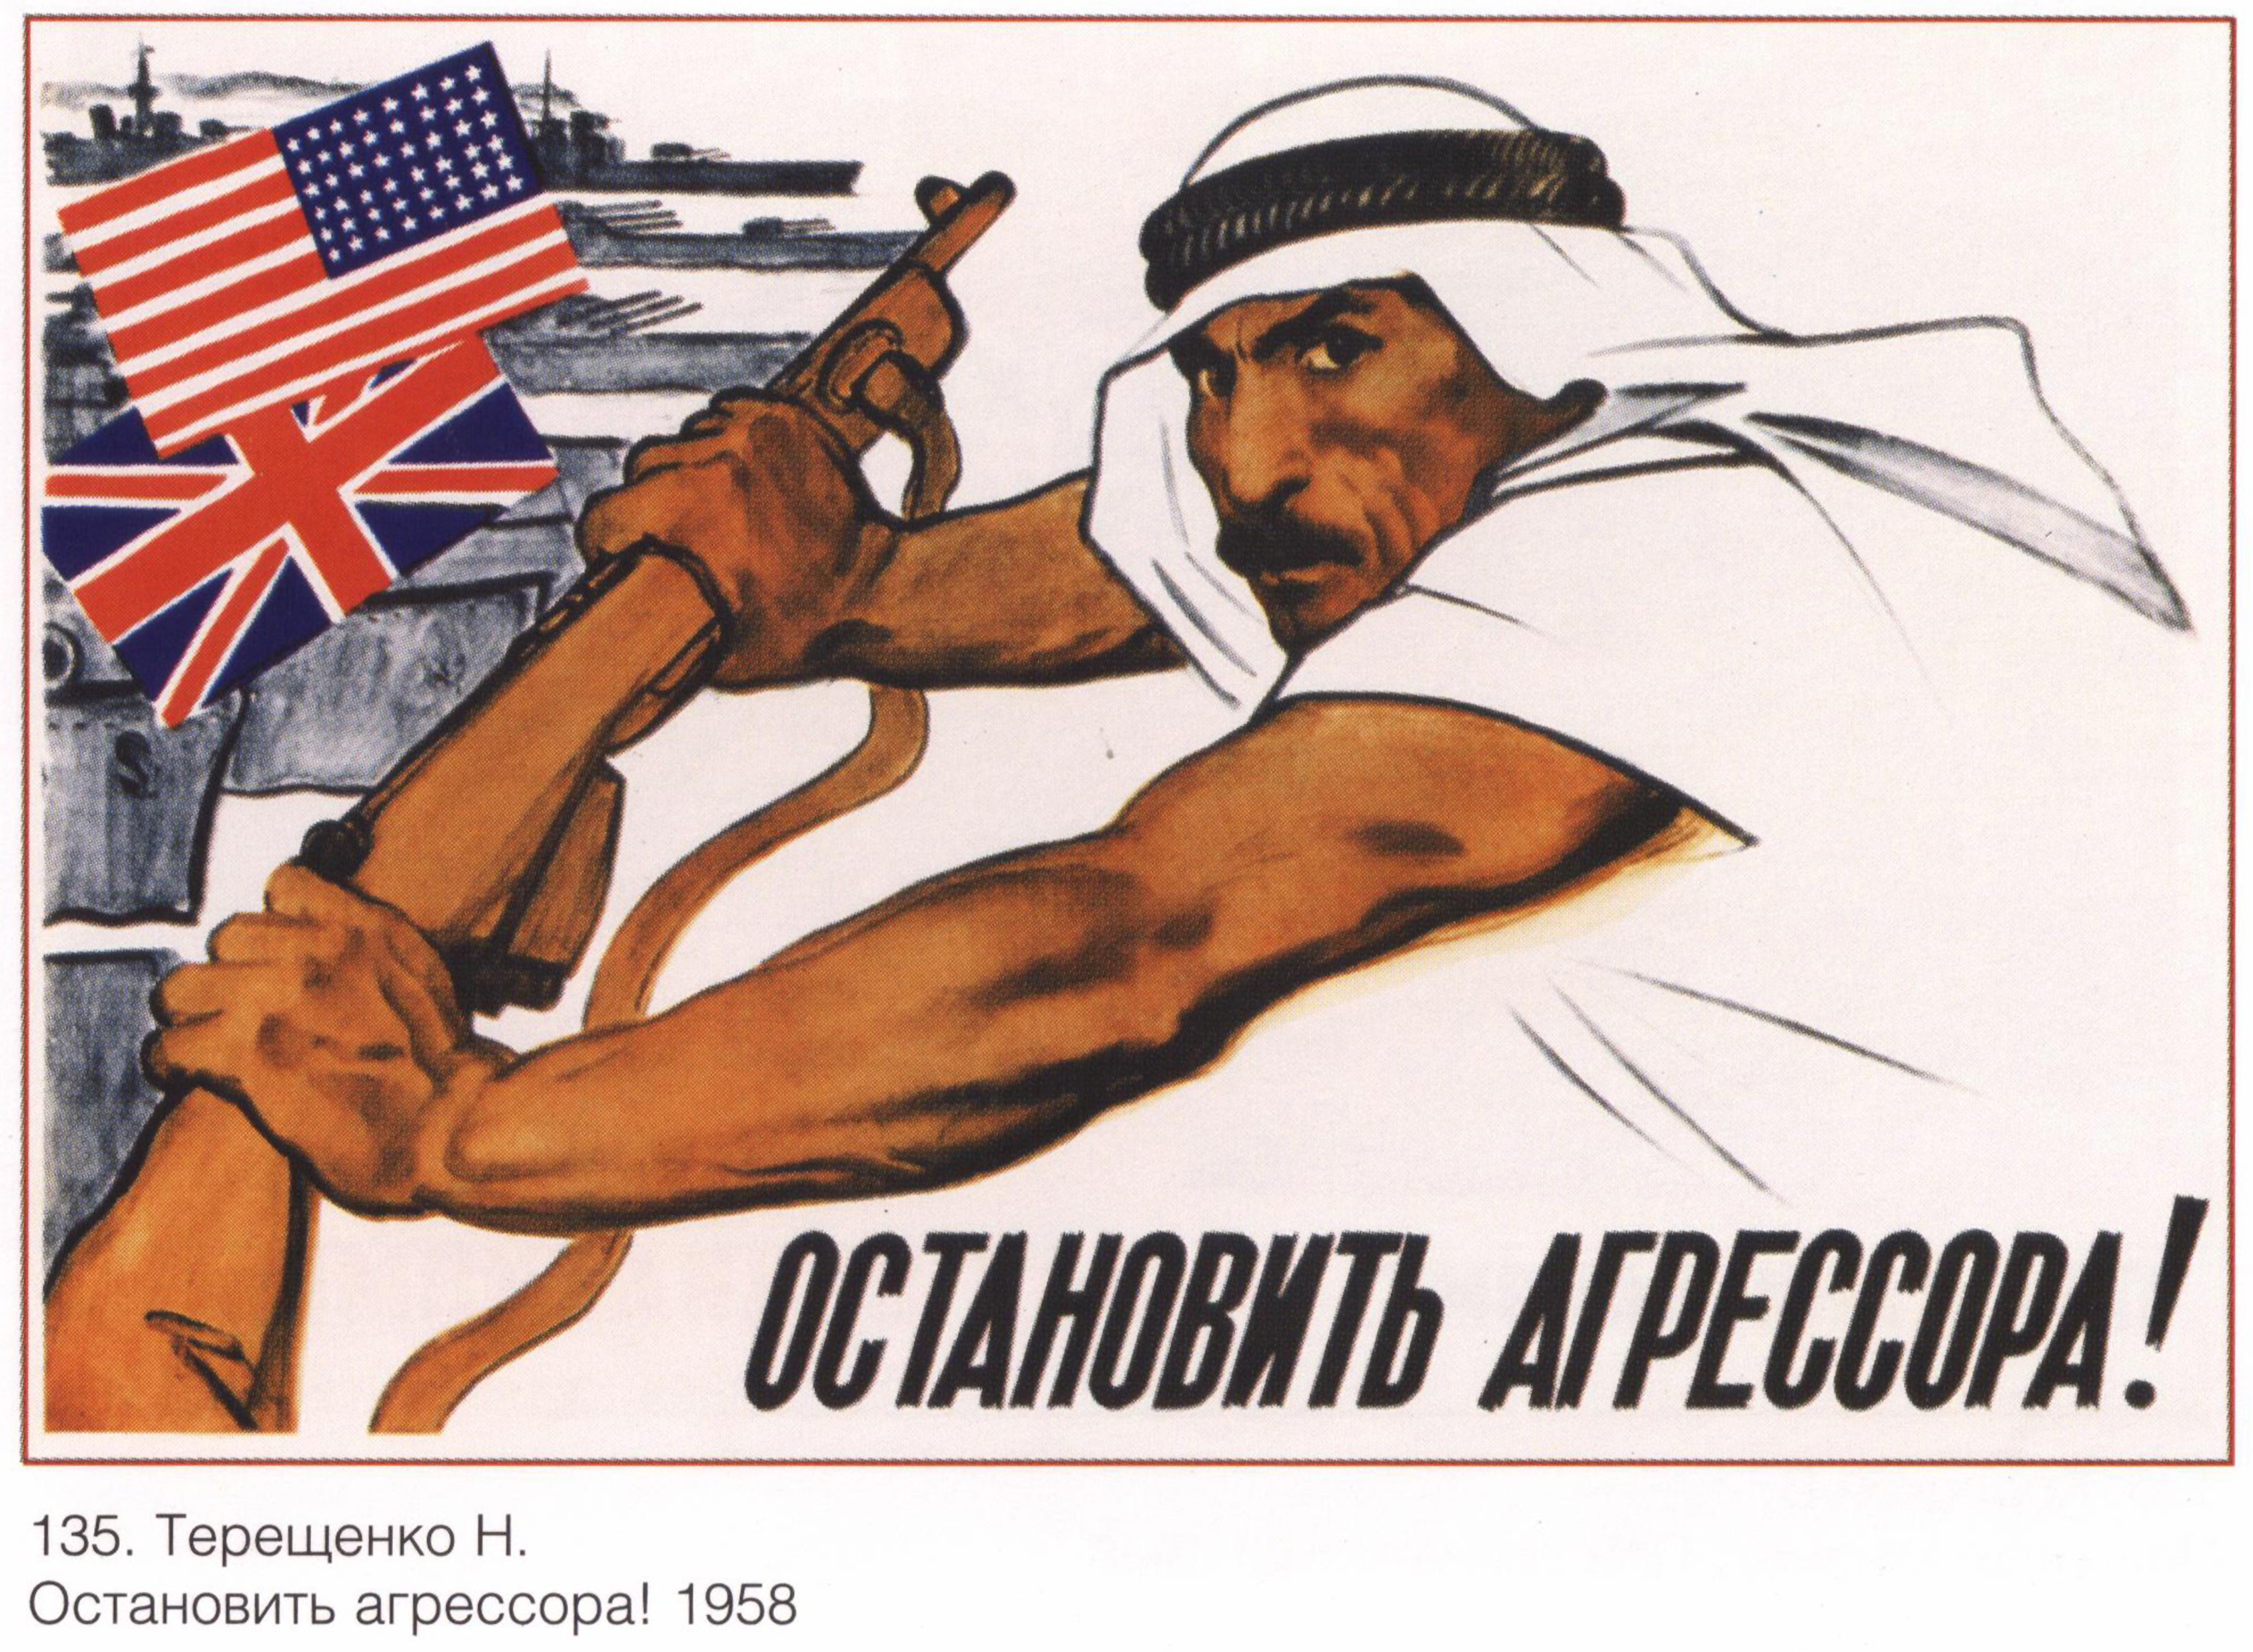 Рисунок иллюстрация к лозунгу. Агитационные плакаты. Советские плакаты. Пропагандистские плакаты. Советская пропаганда плакаты.